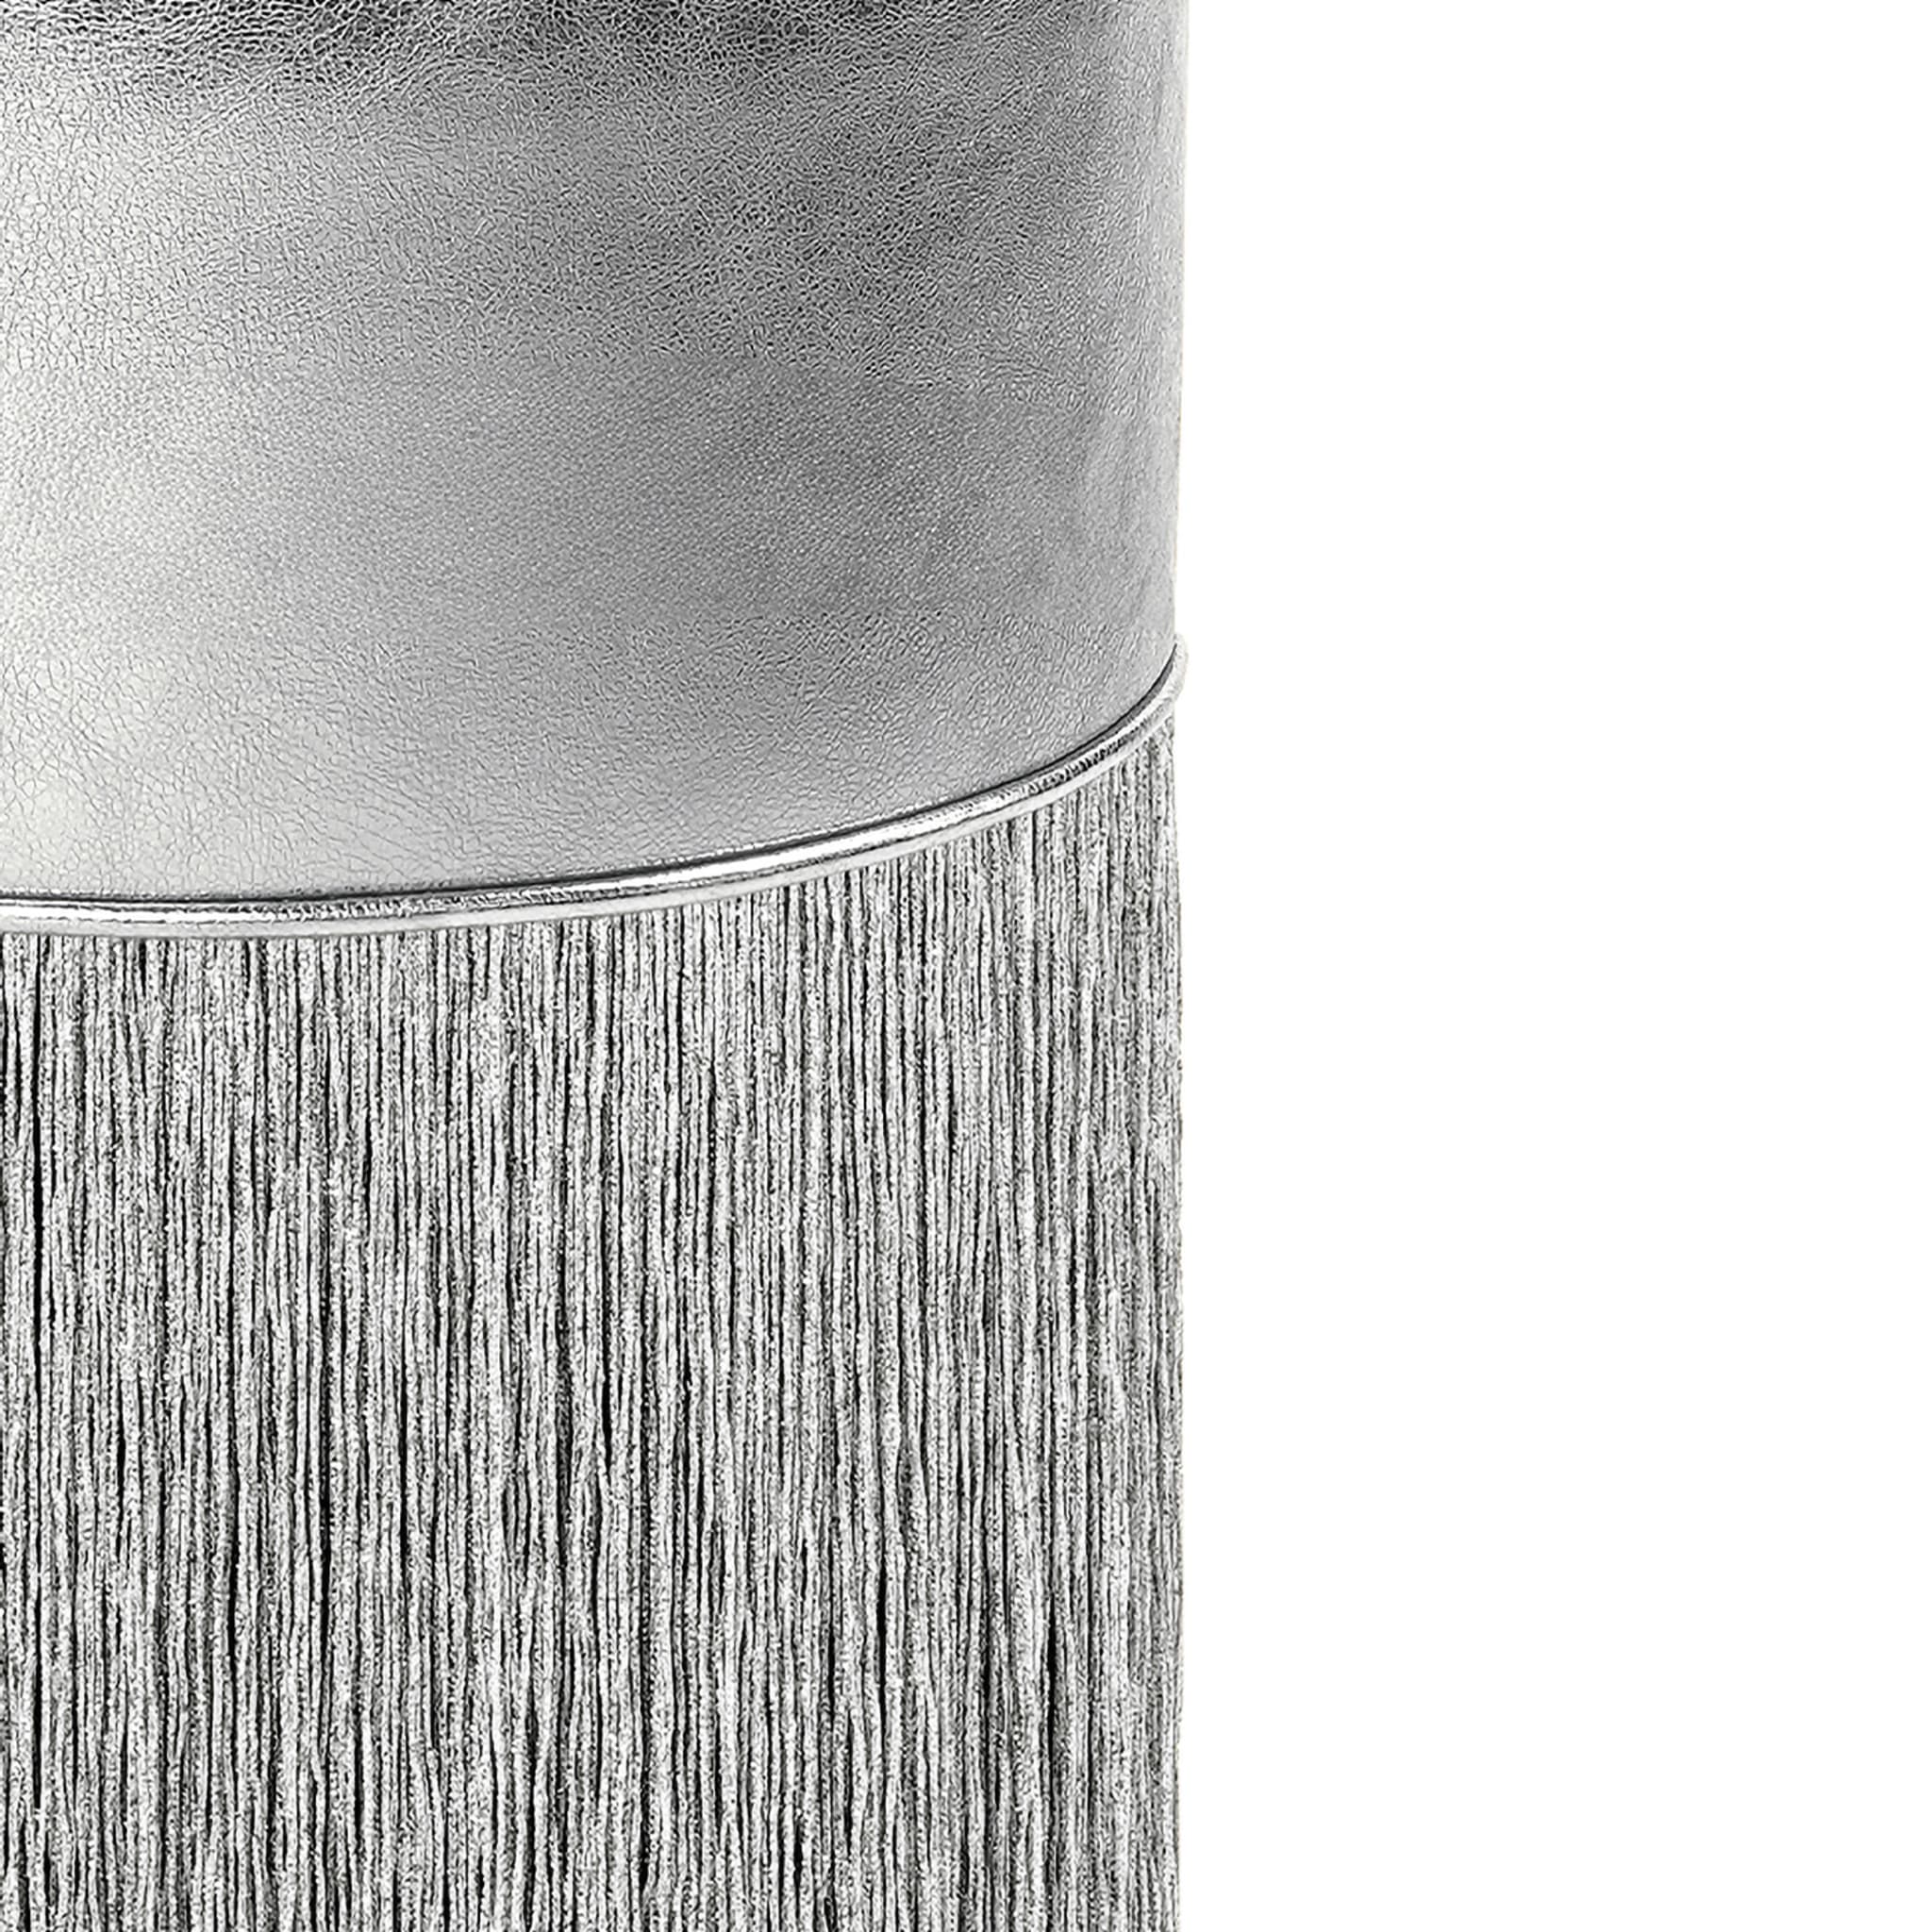 Silberglänzender Pouf aus metallischem Leder von Lorenza Bozzoli - Alternative Ansicht 1